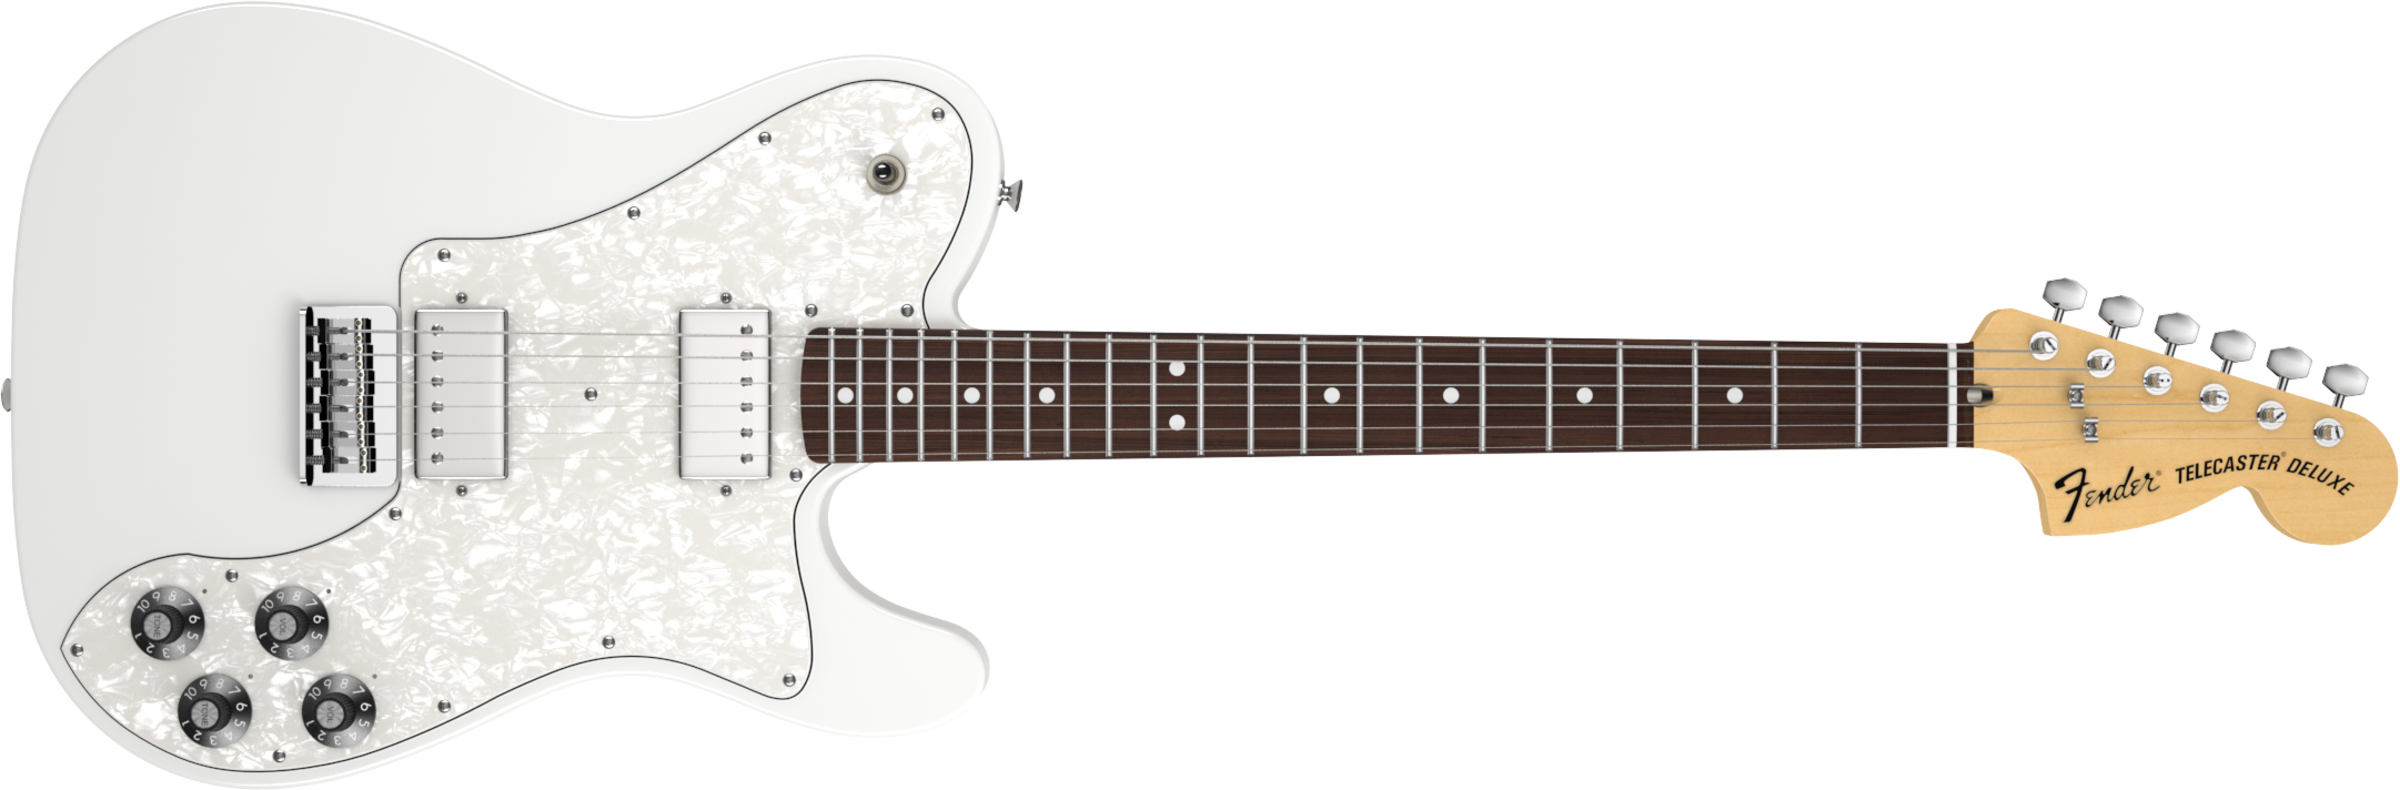 Fender Chris Shiflett Telecaster Deluxe, Rosewood Fingerboard